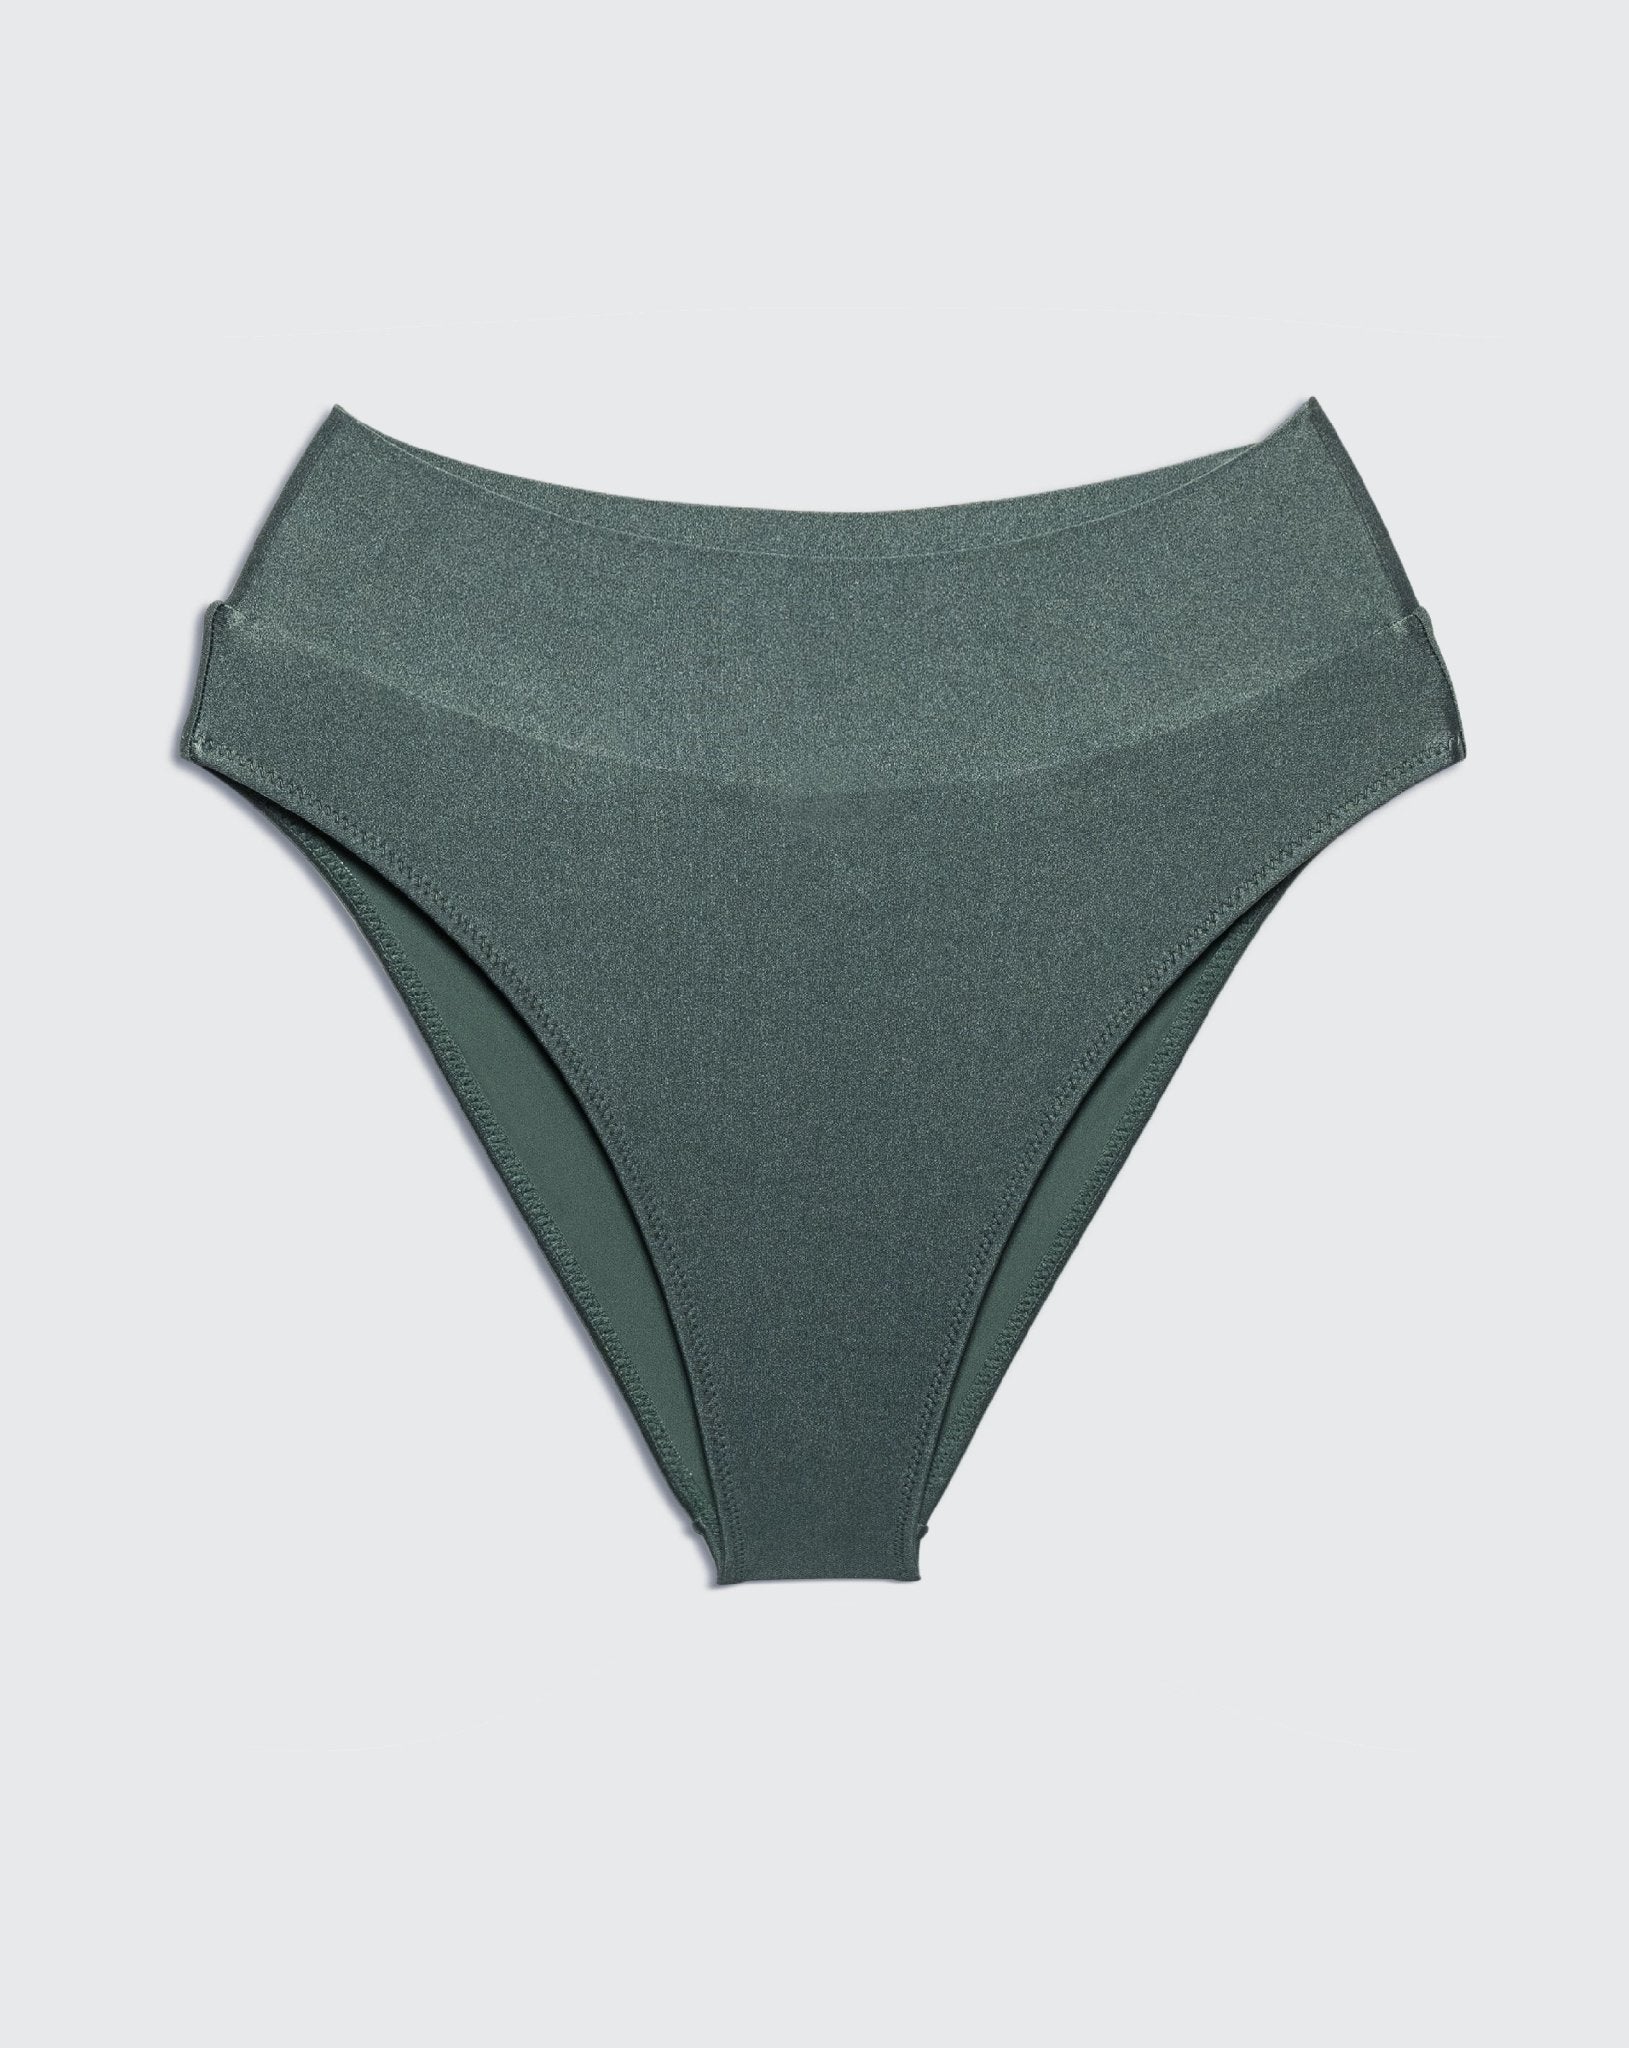 YUMI BOTTOM Sage - BIKINI -BiliBlond Swimwear